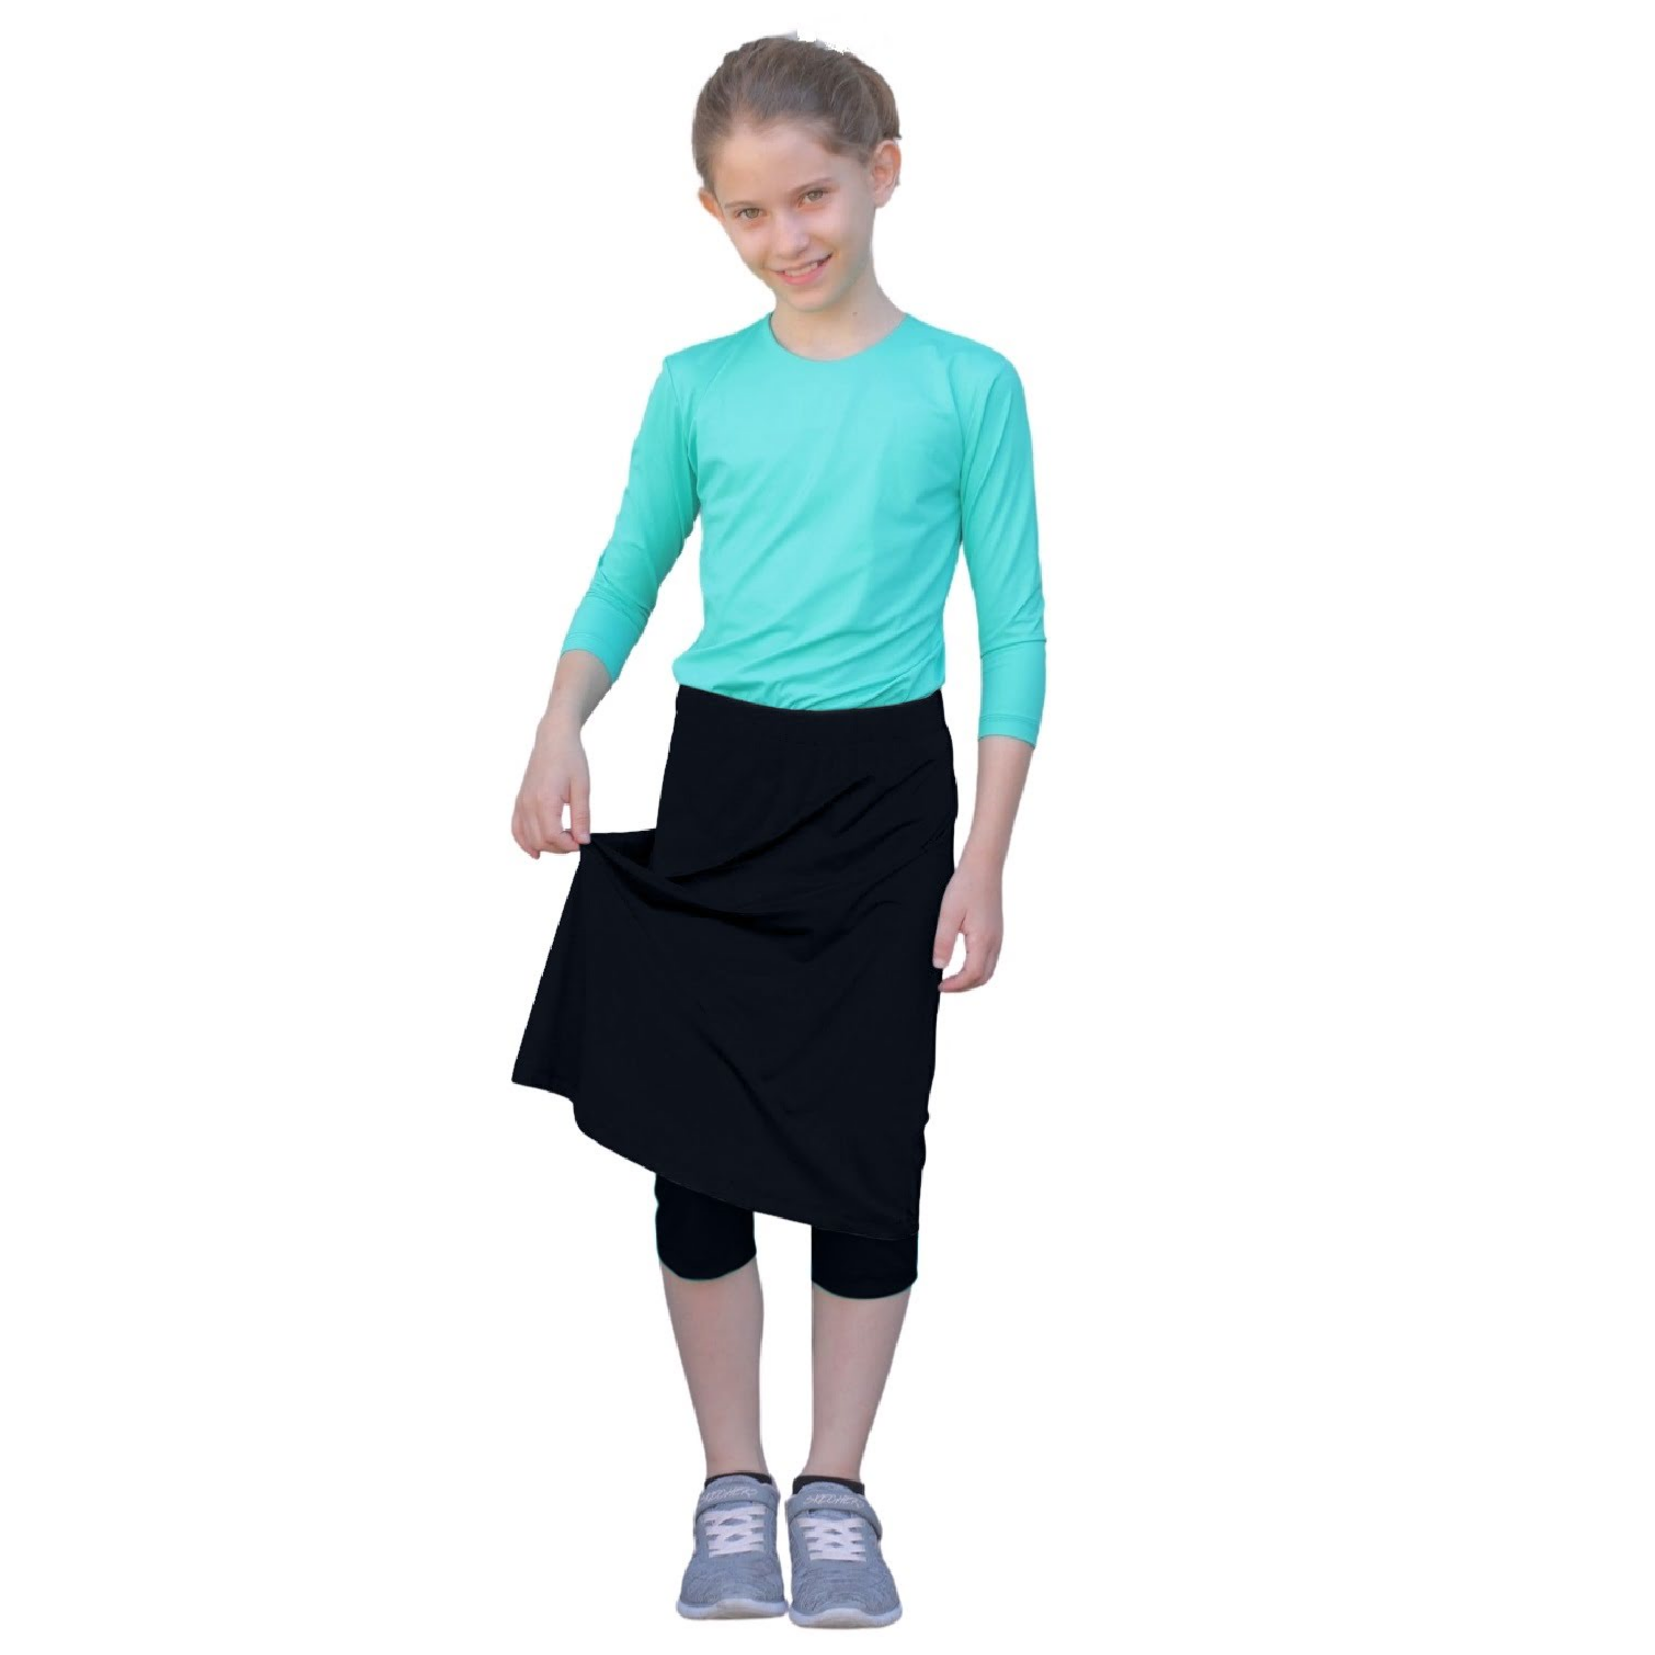 Spandex Skort - Skirt with Leggings for Running/Swimming/Exercise